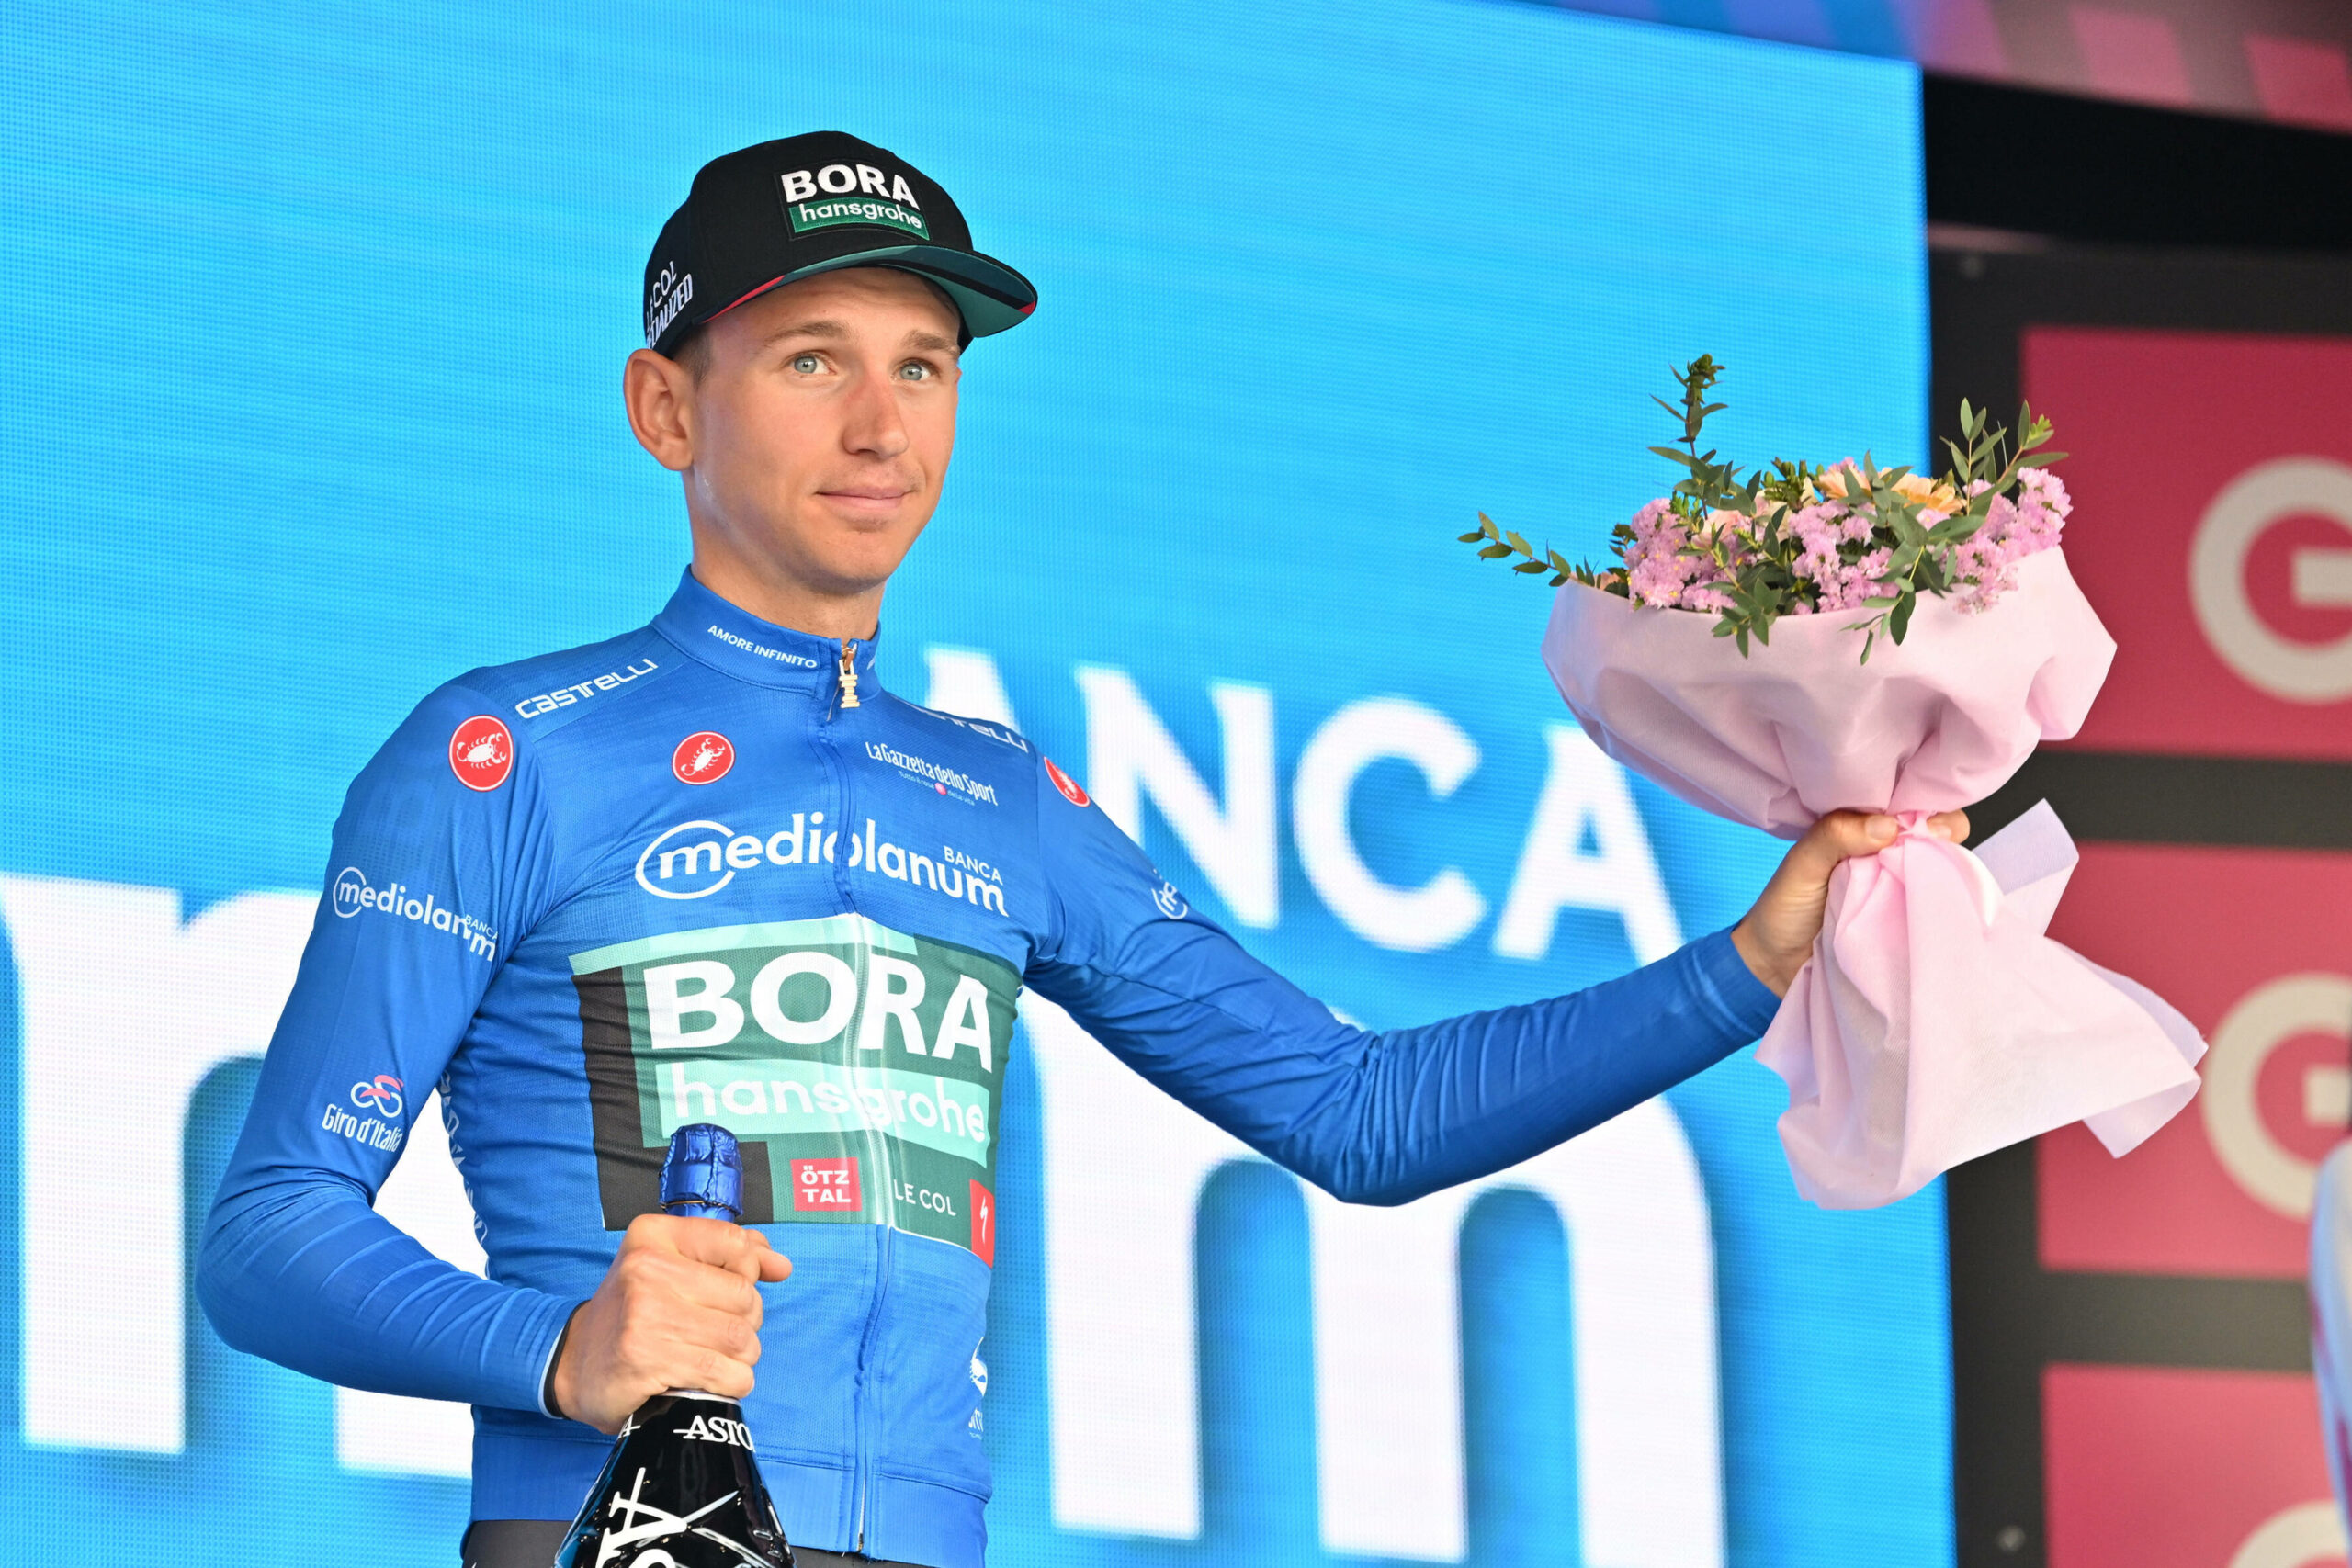 Lennard Kämna wird für einen Tagessieg beim Giro d'Italia geehrt.